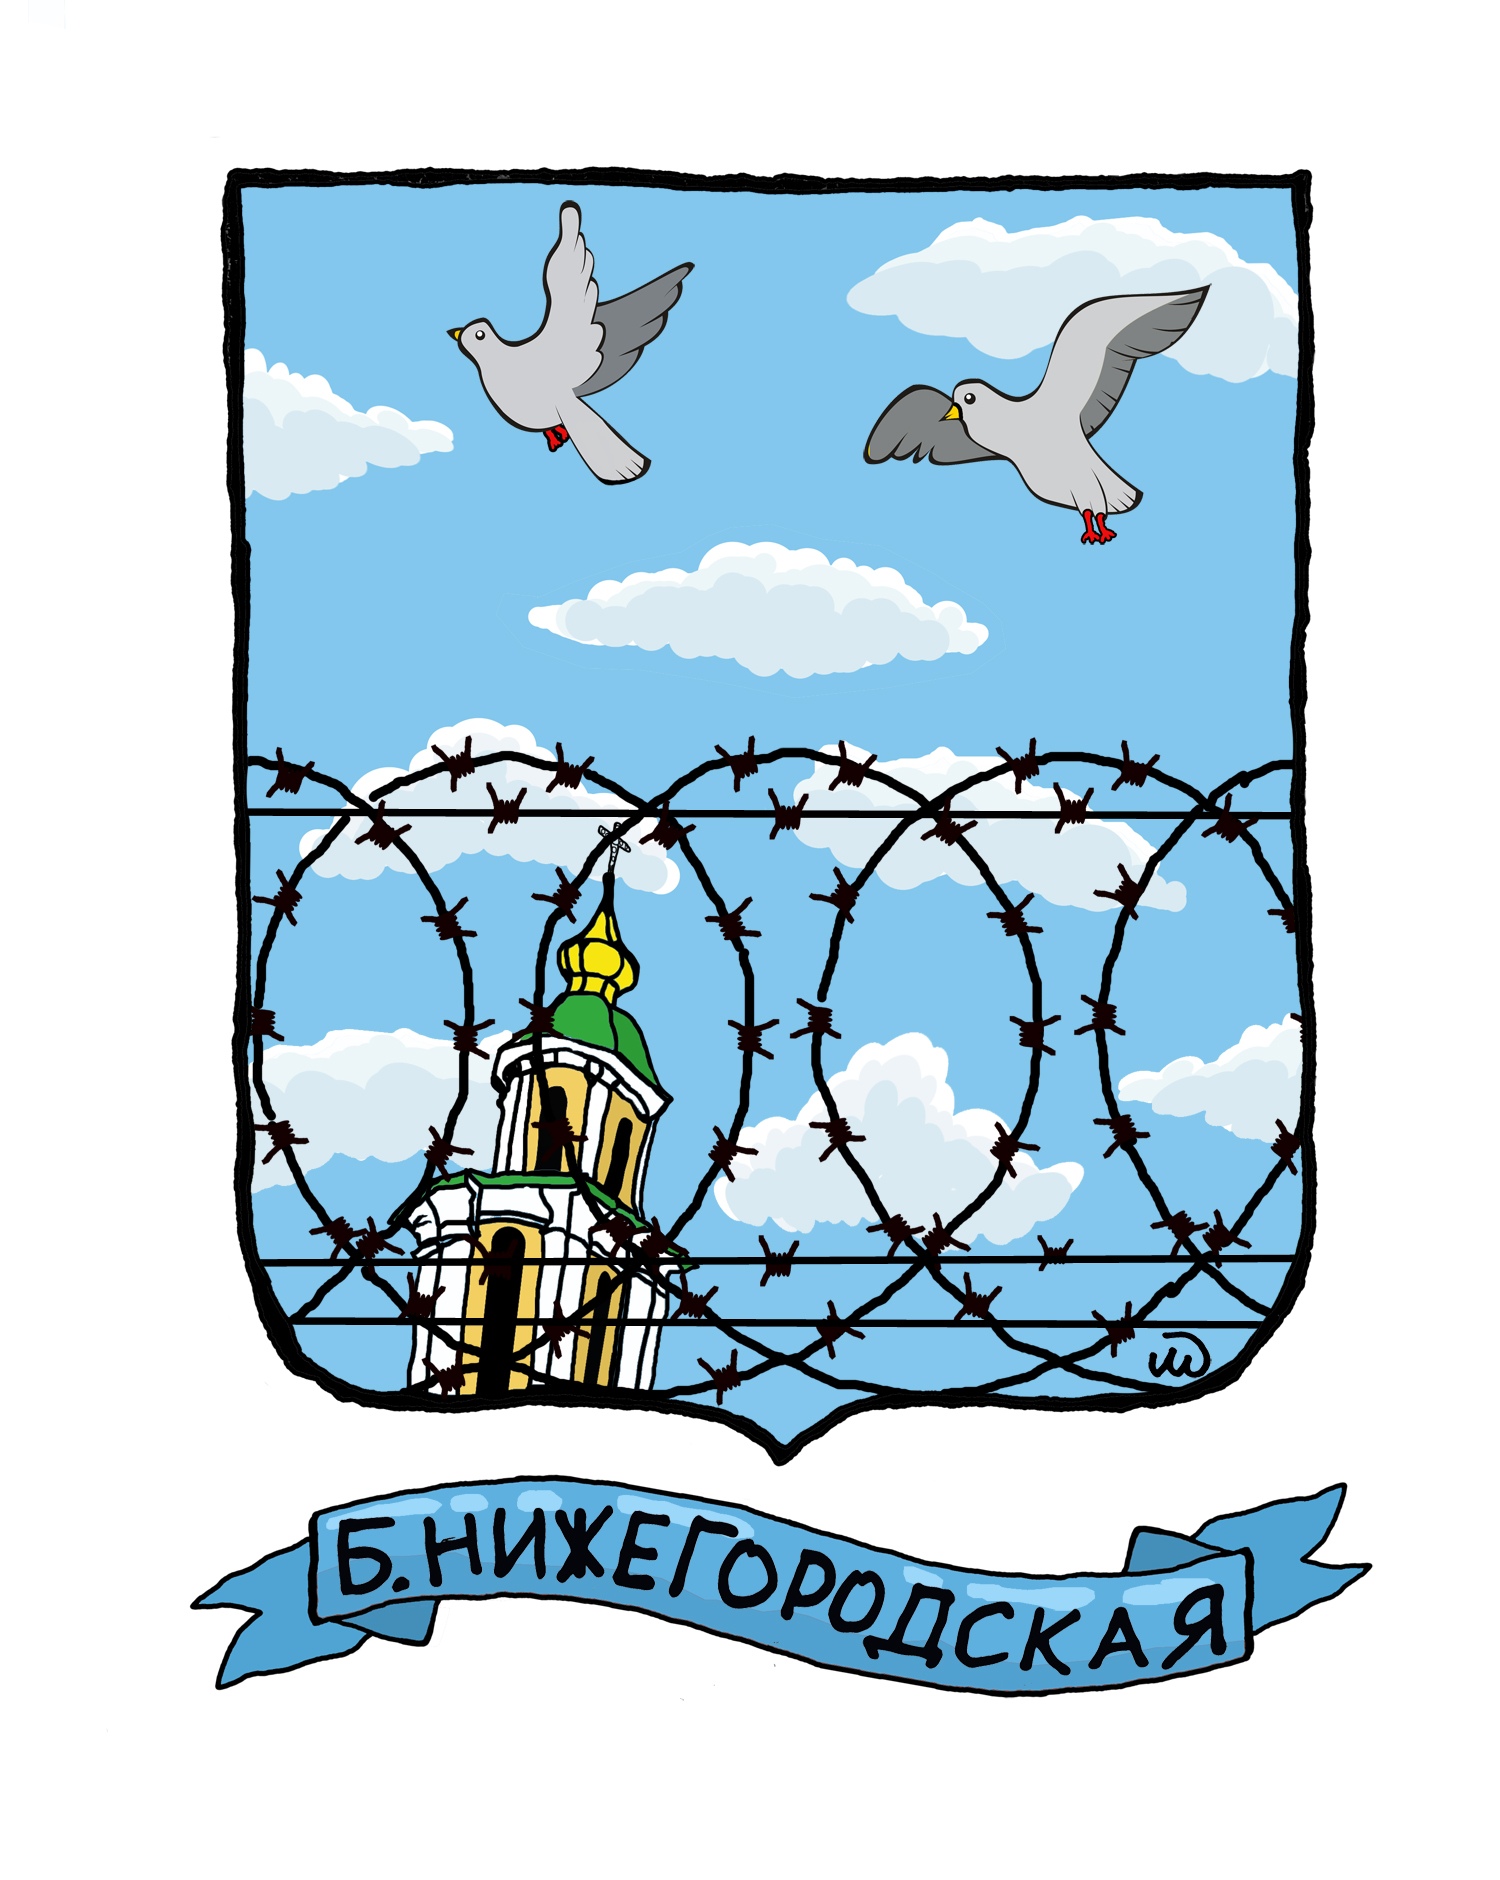 Владимирский блогер Иван Медведев нарисовал шуточные гербы для 8 владимирских улиц.